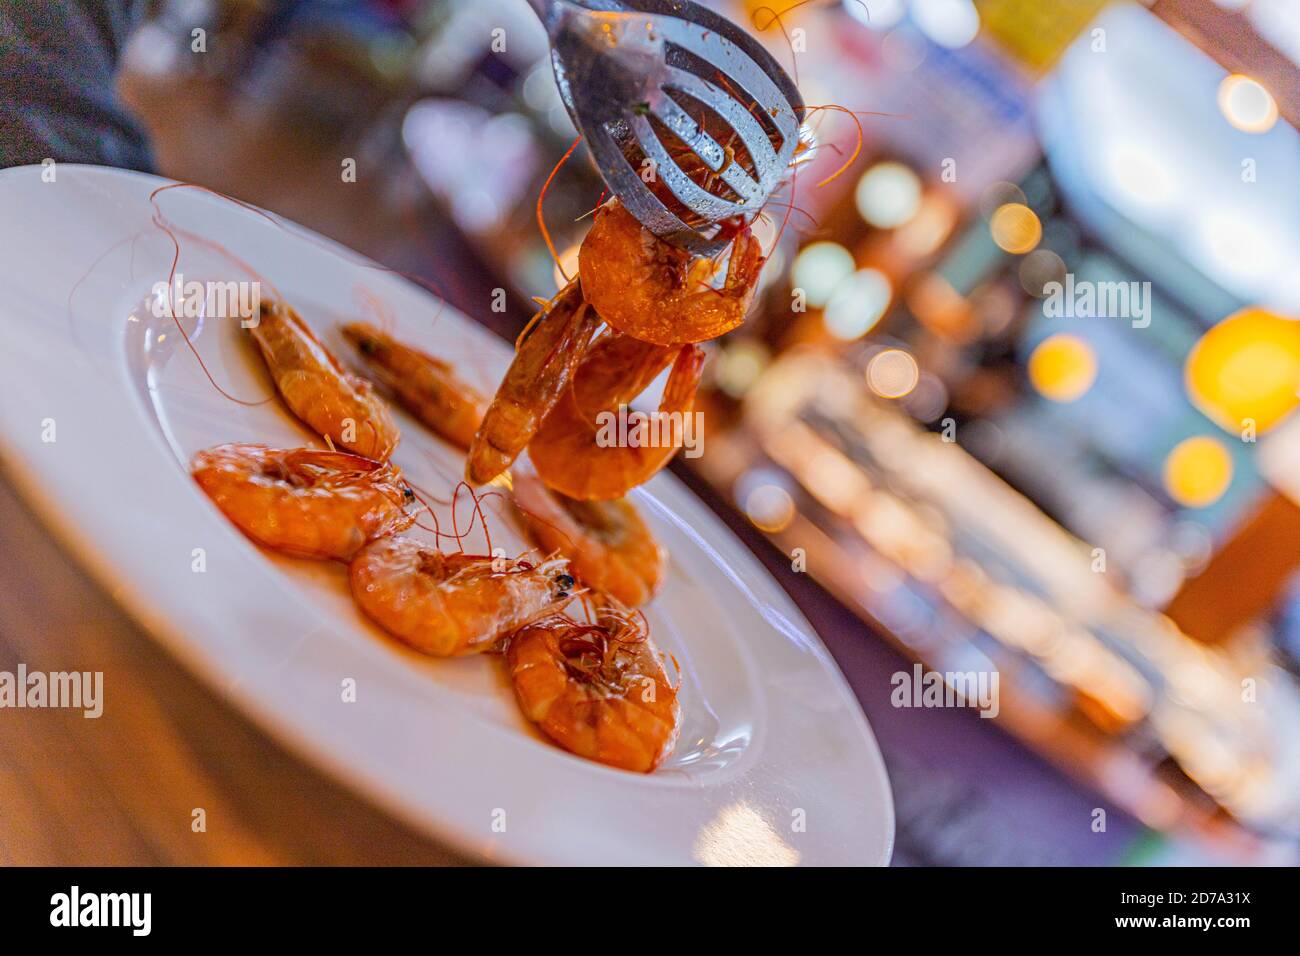 Crevettes fraîches cuites sur une assiette blanche, plat. Fruits de mer concept alimentaire sain Banque D'Images